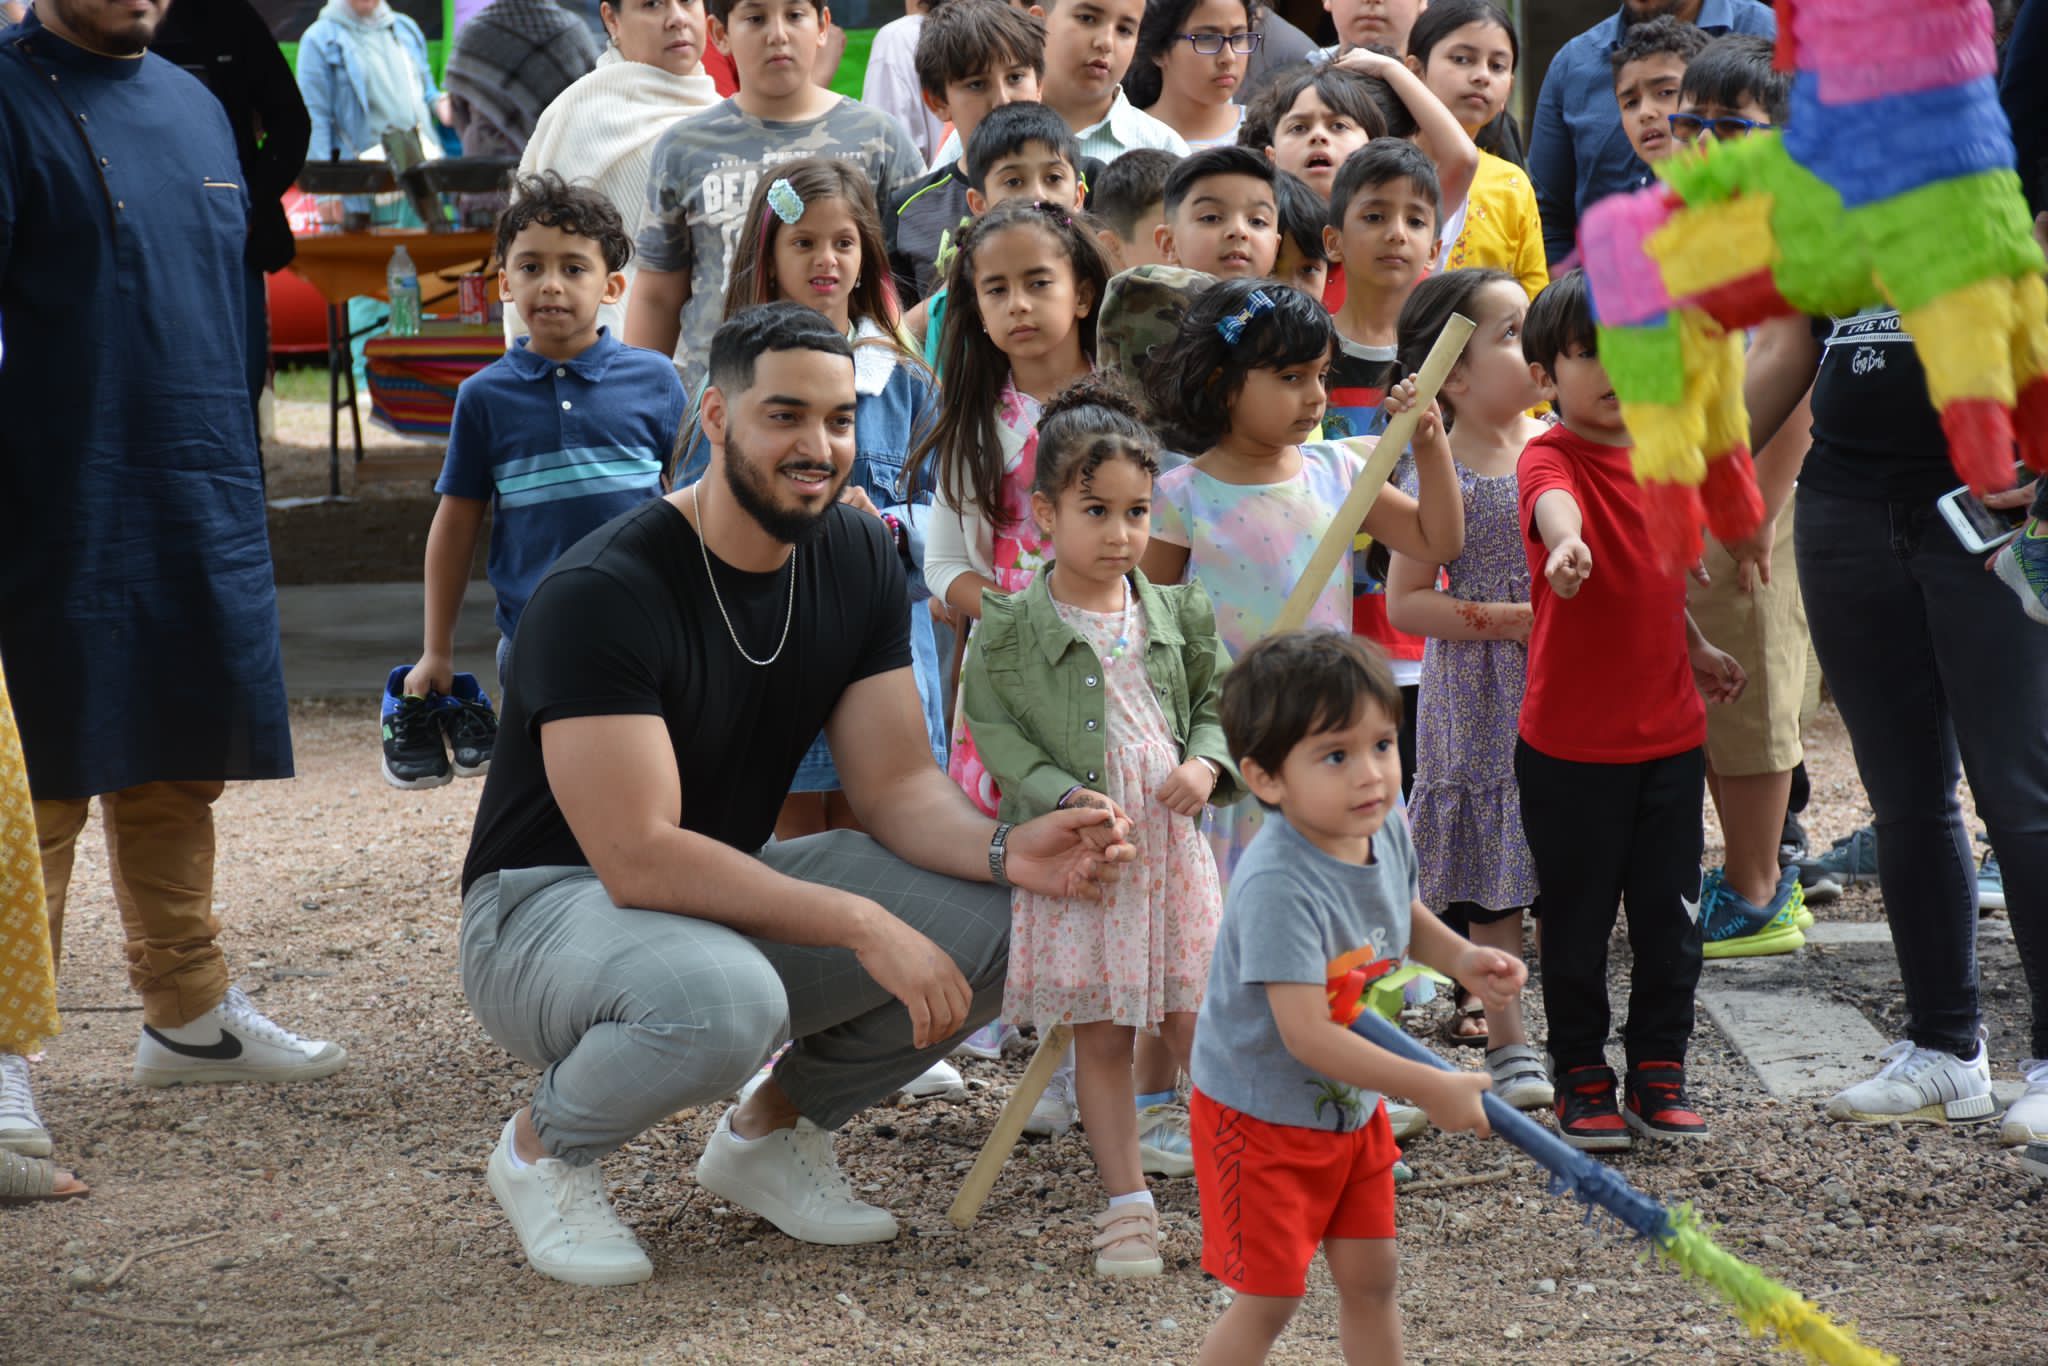 Young Latino family enjoying the IslamInSpanish Eid Al-Fitr festivities in Dallas, TX.